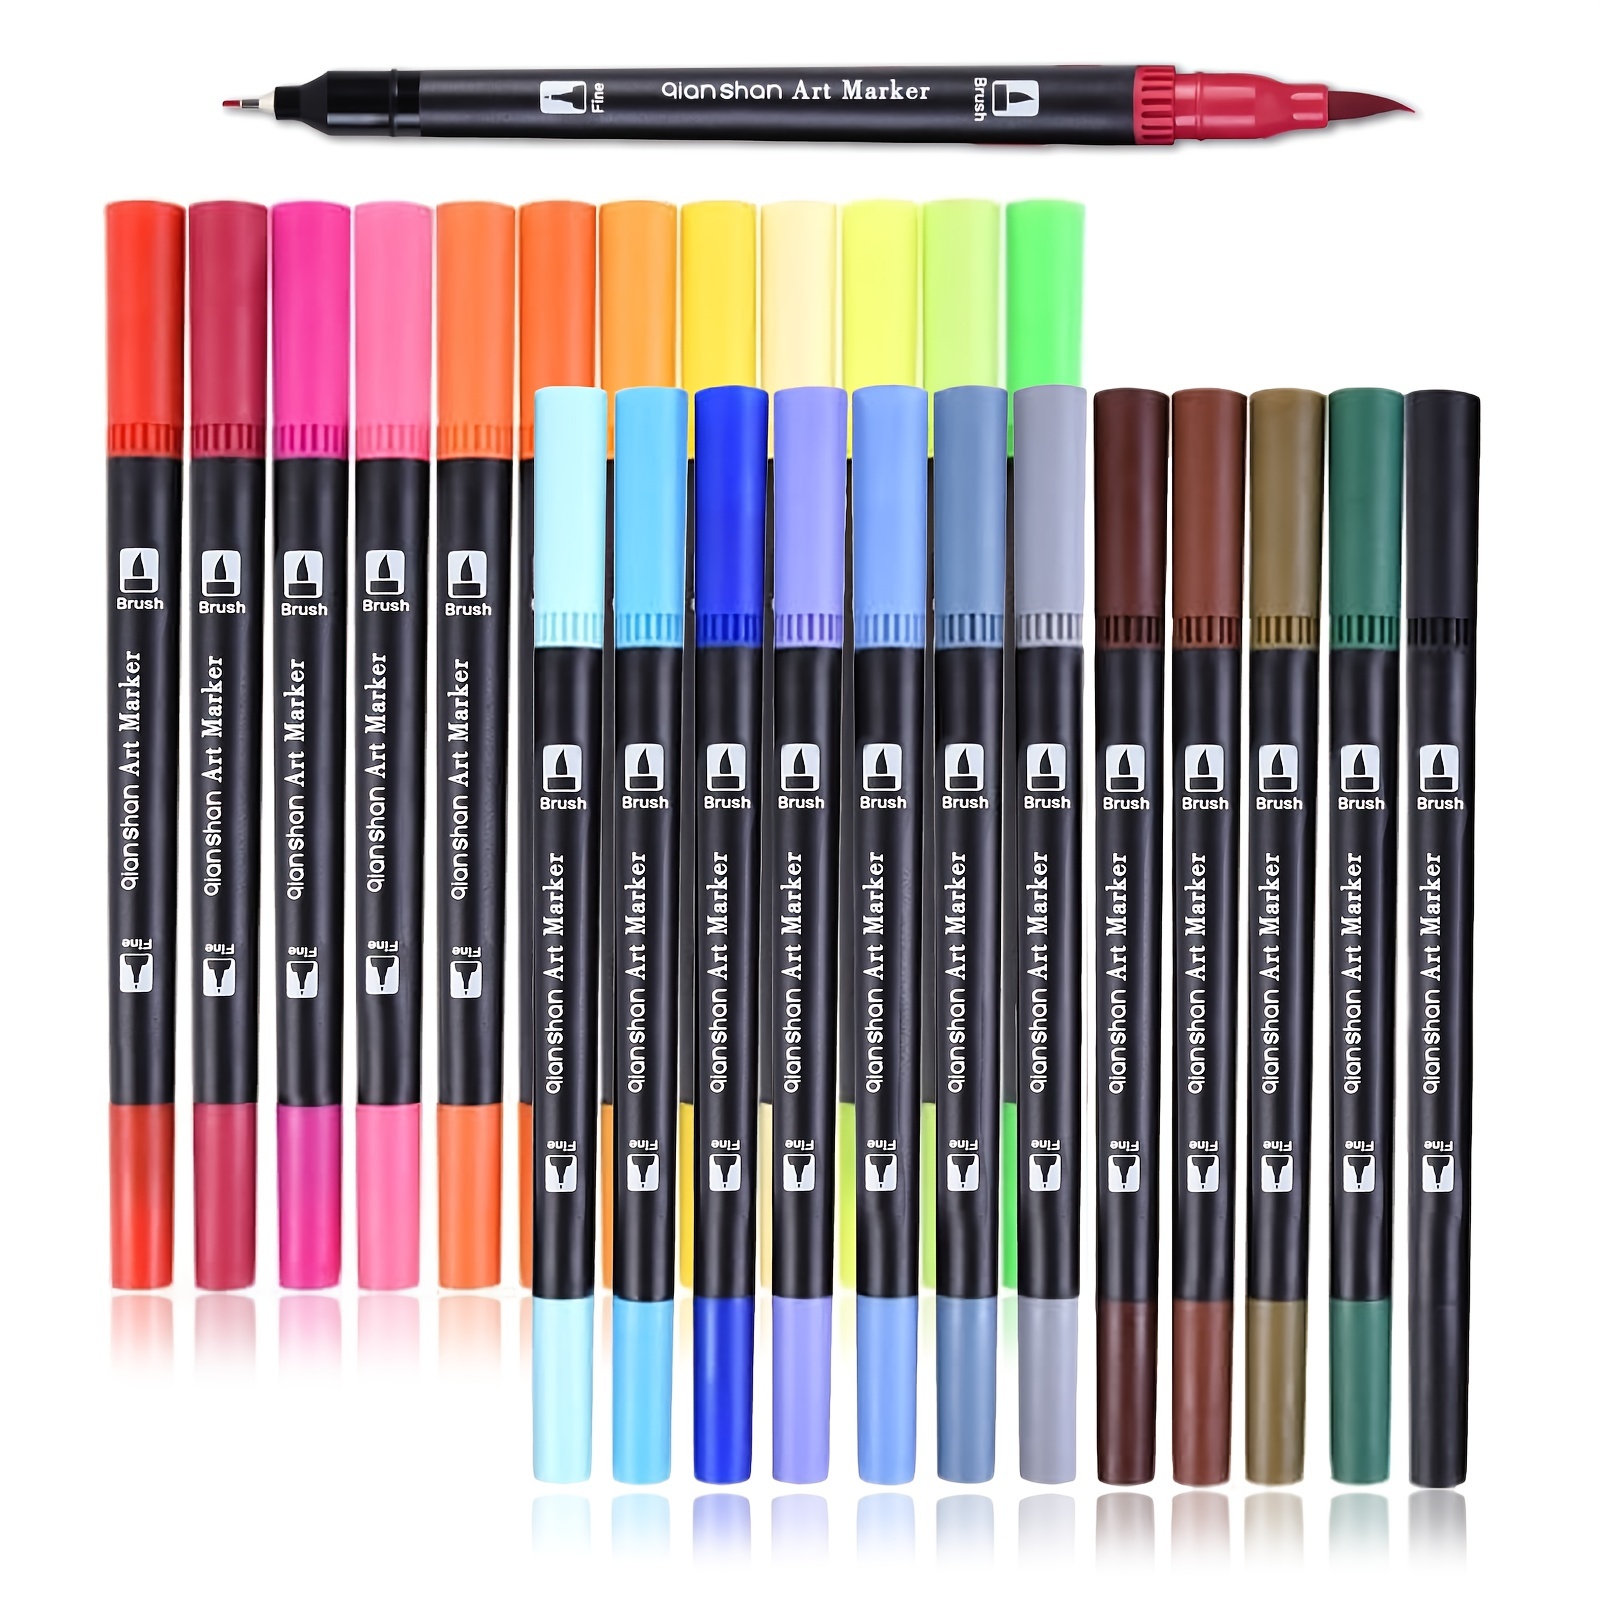 Maikedepot Brush Tip Pen, 5pcs Sign Brush Pens Arts Felt Tip Marker Water  Based Journaling Pen Set for Beginners Kids Adult Lettering